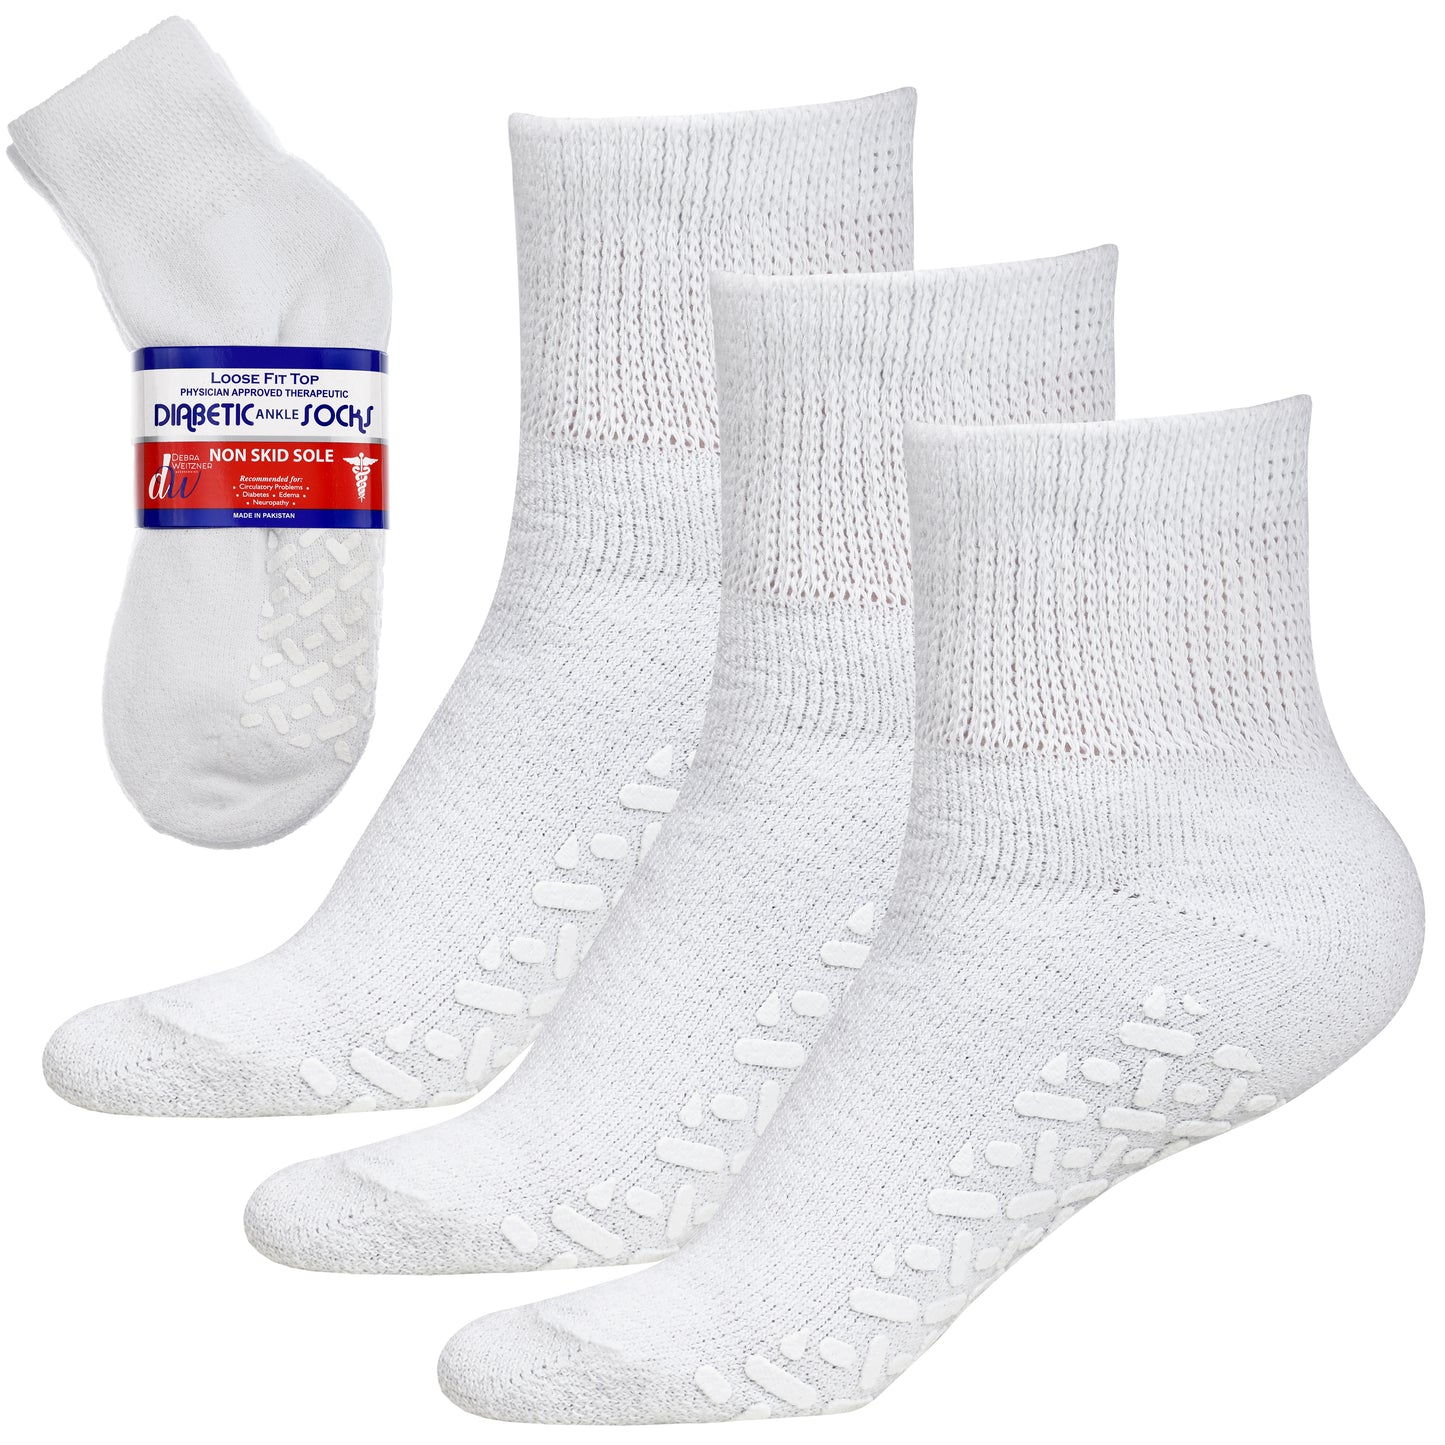 Diabetic Grip Socks for Men and Women - Non Slip 3 Pairs